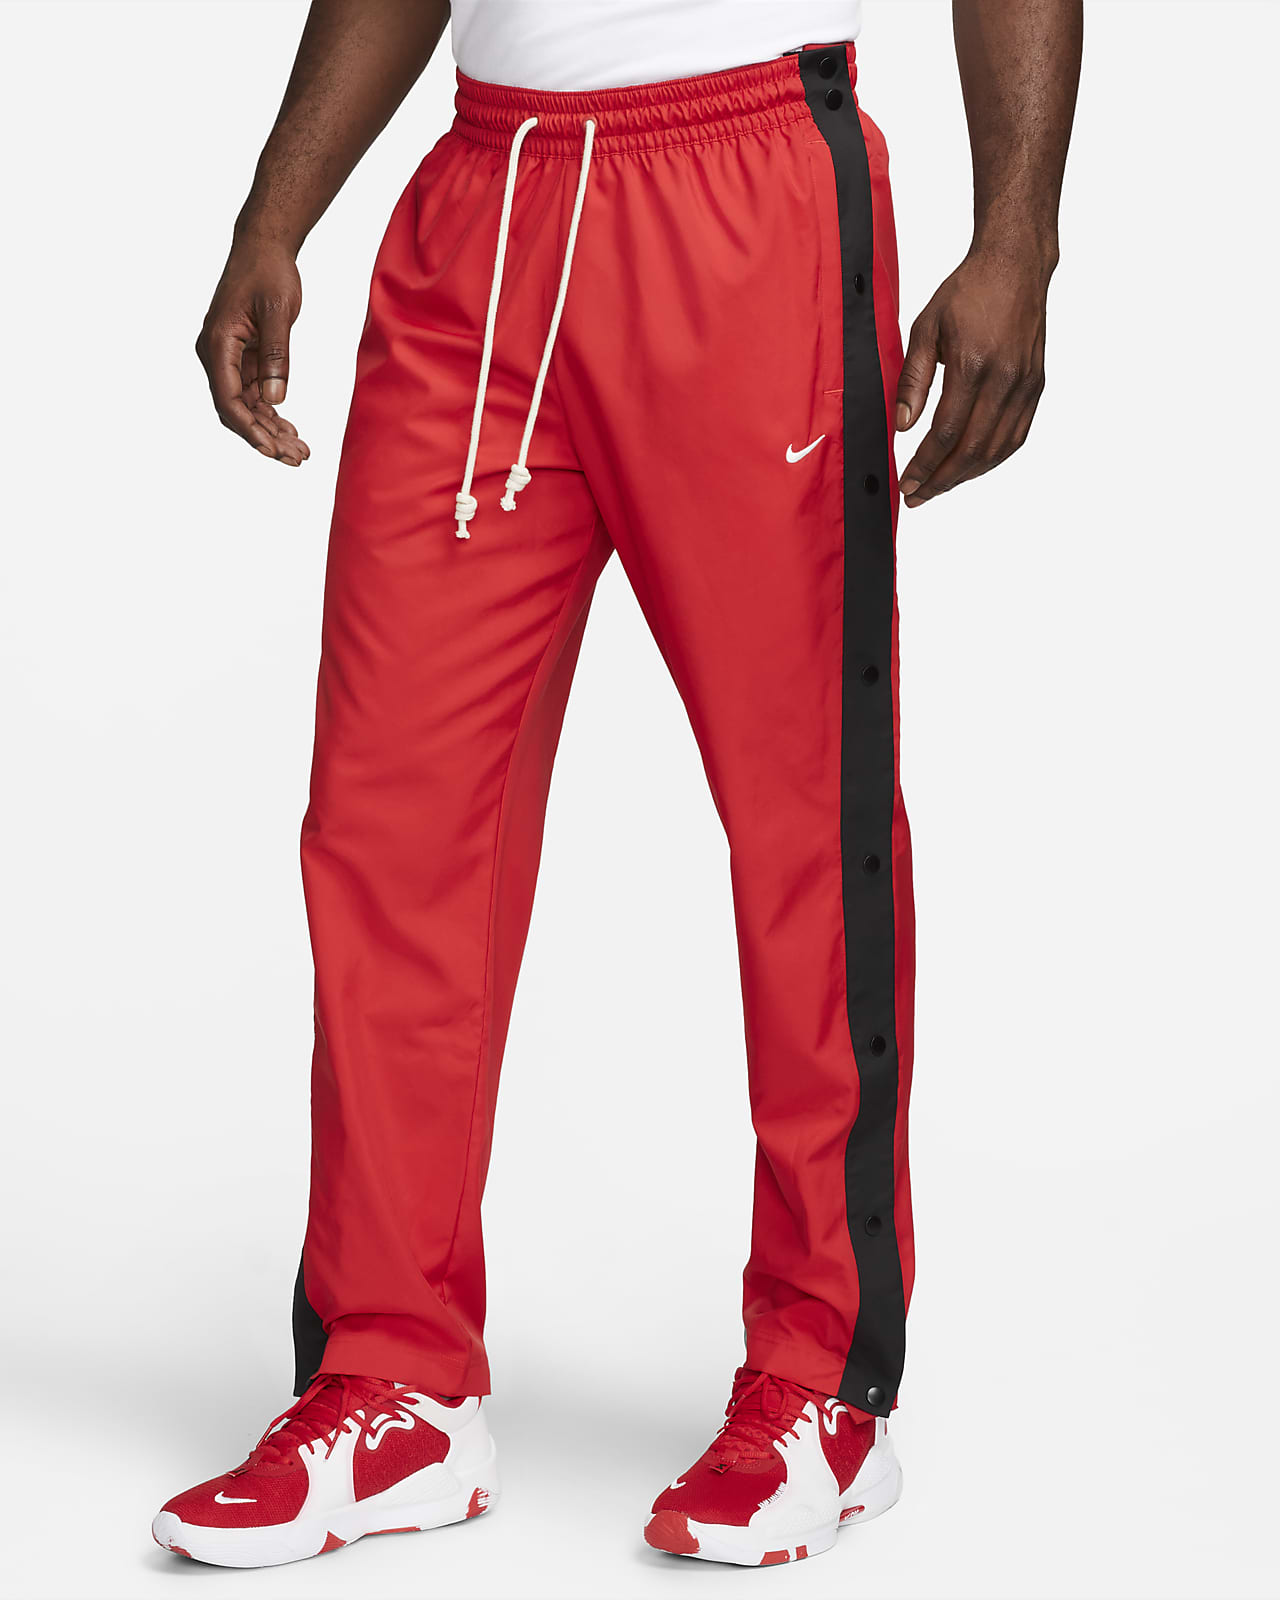 Tearaway Basketball Pants. Nike 